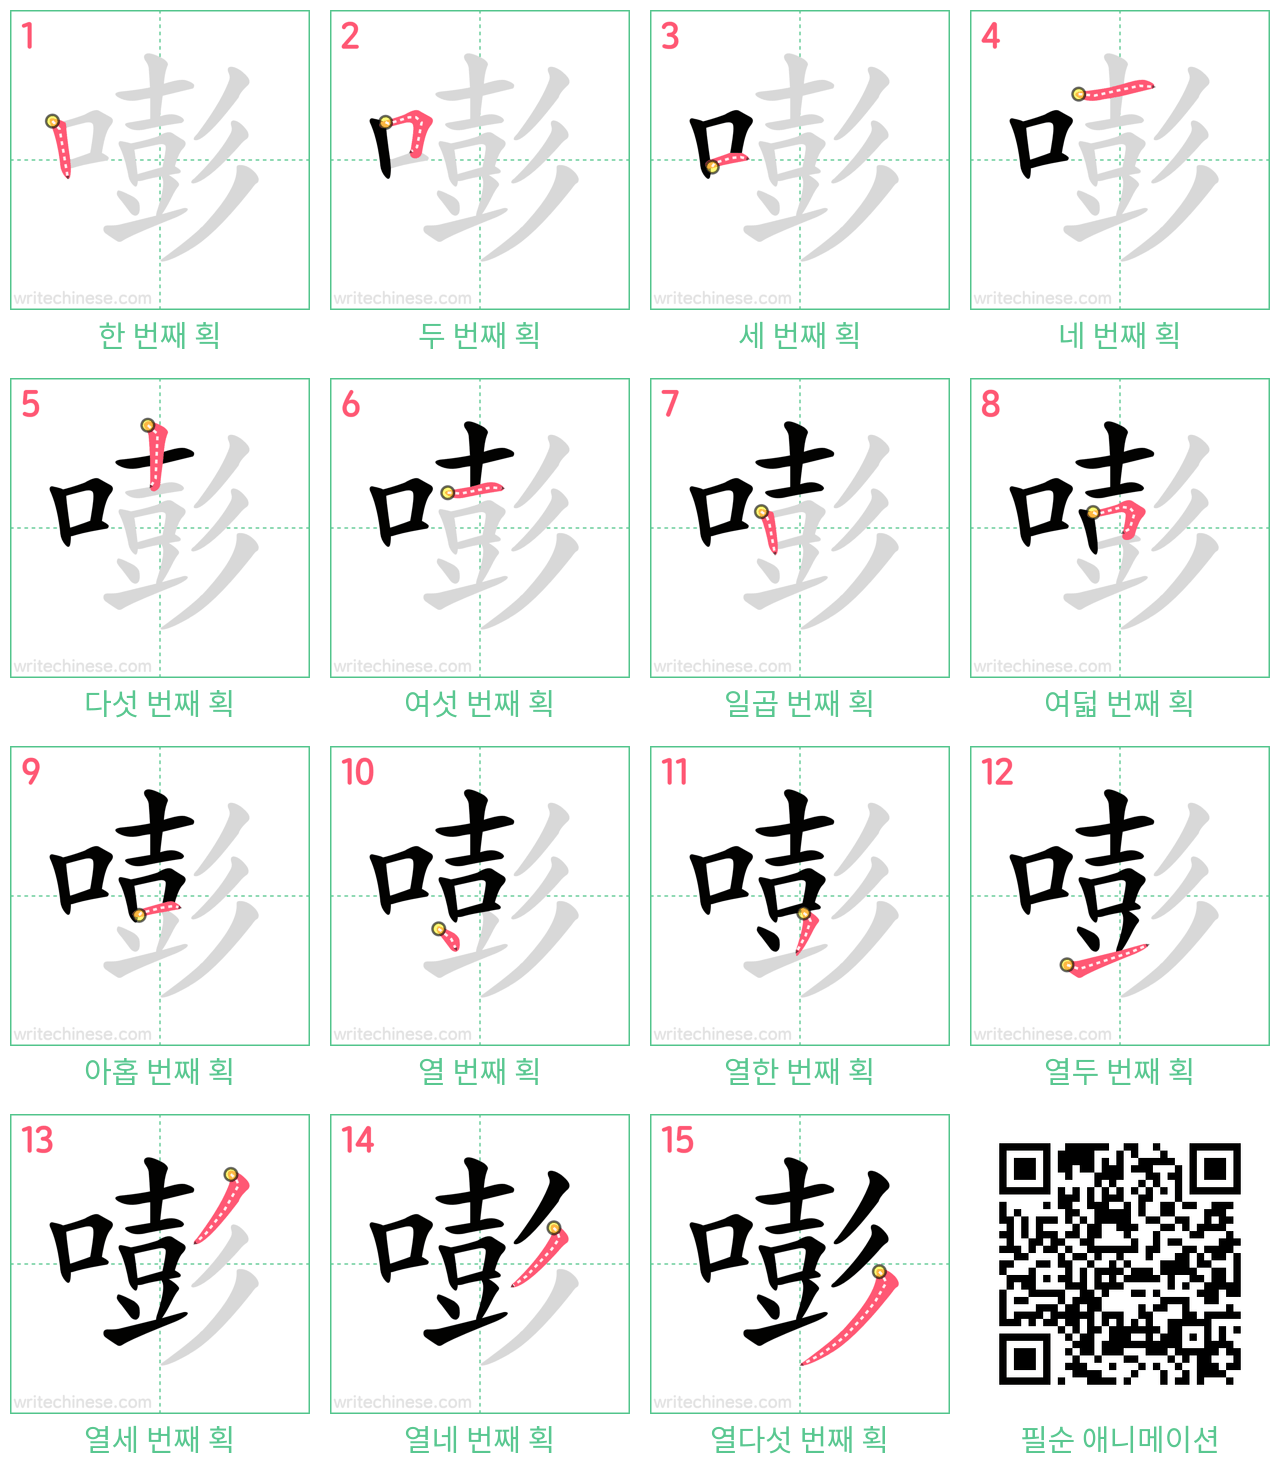 嘭 step-by-step stroke order diagrams